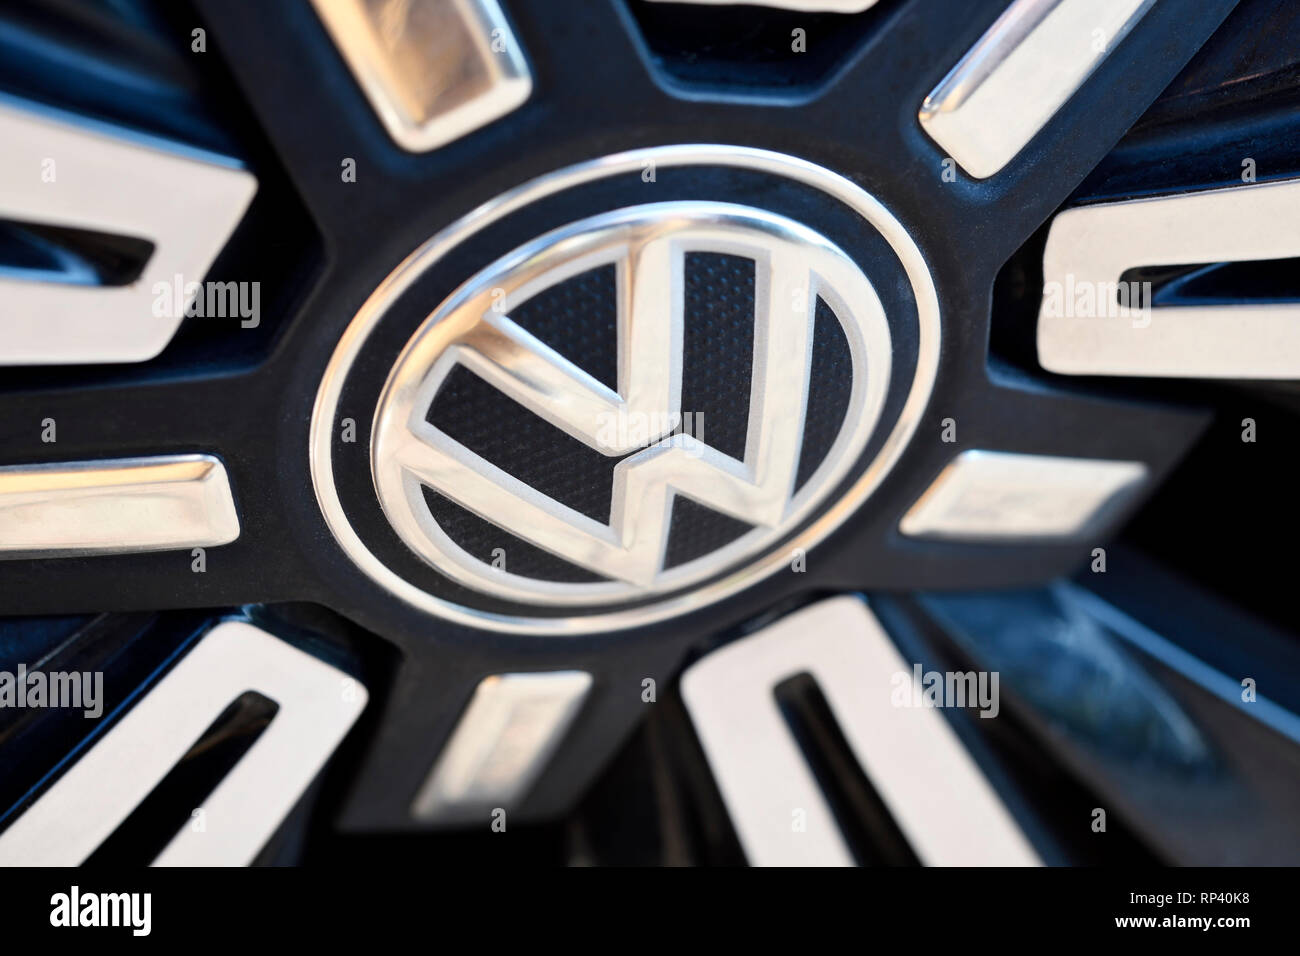 VW signs on a car, VW-Zeichen auf einem Auto Stock Photo